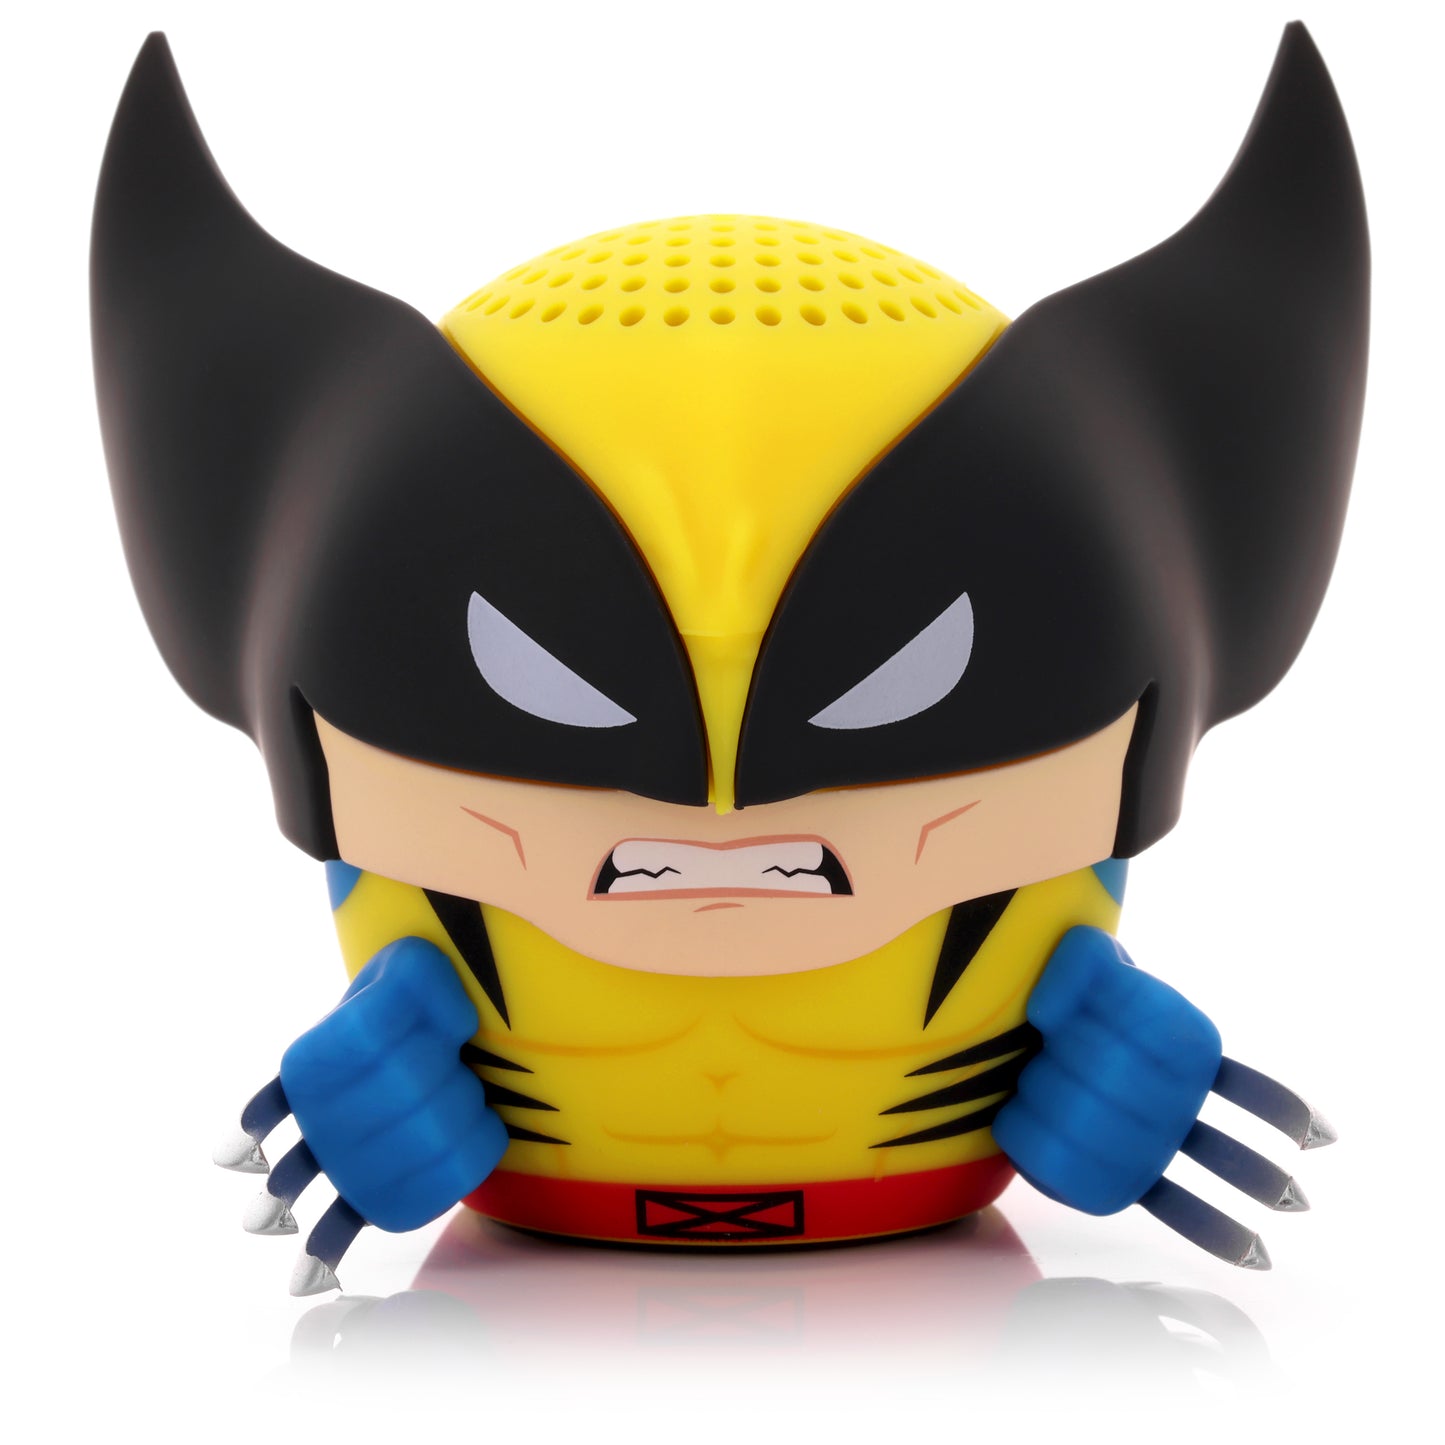 Marvel X-Men '97 Wolverine Bitty Boomers Bluetooth Speaker